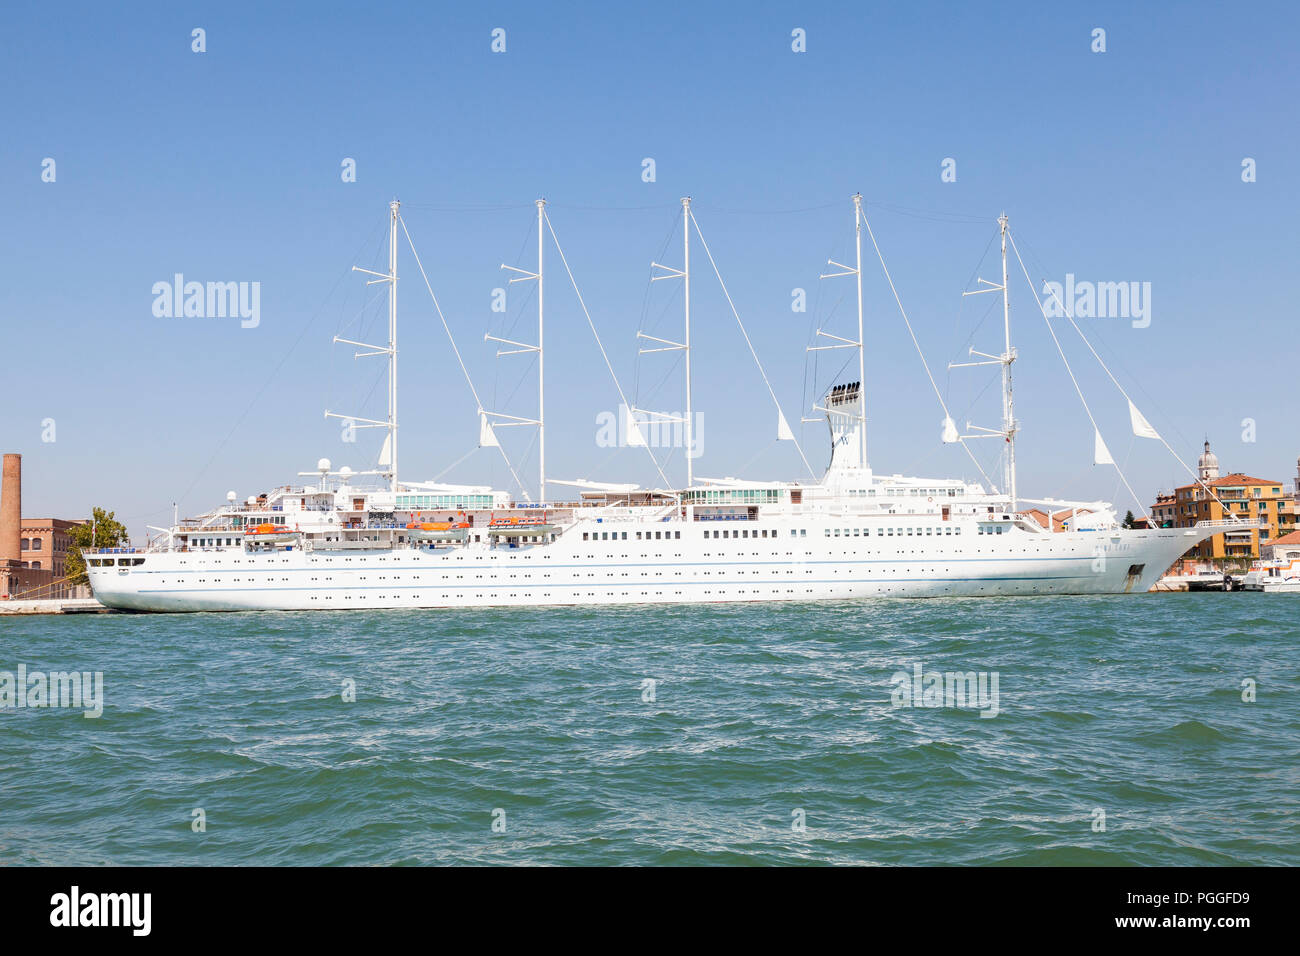 Fve-mast staysail schooner, Wind Surf, ormeggiata a Venezia, Veneto, Italia. Passeggeri più grande yacht a vela in tutto il mondo, ammiraglia della Windstar Cruises Foto Stock